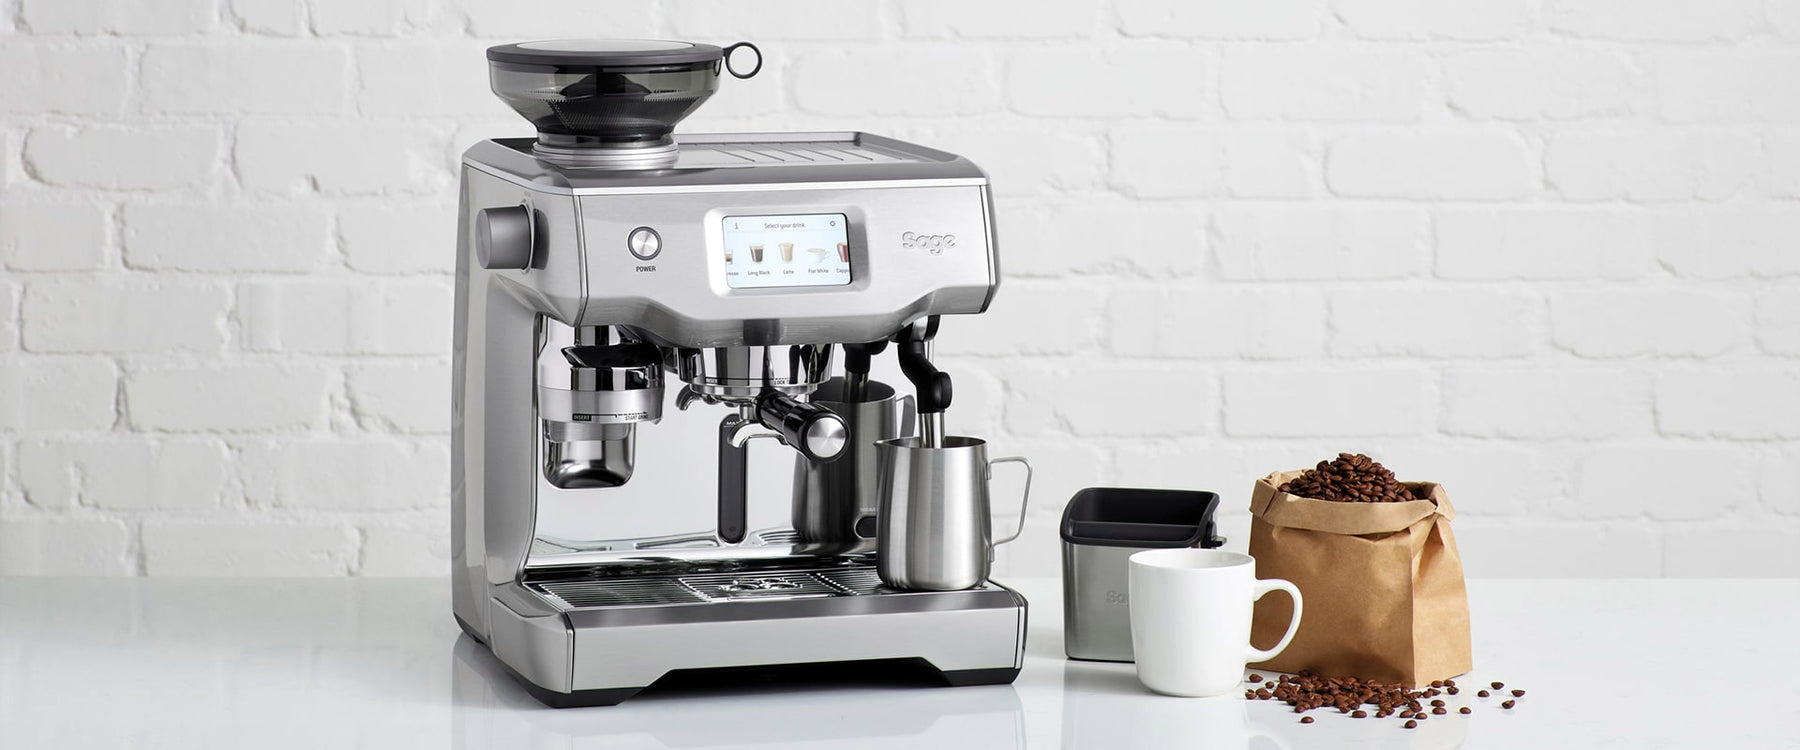 Sage Espresso Machines - Café Quality Coffee at Home